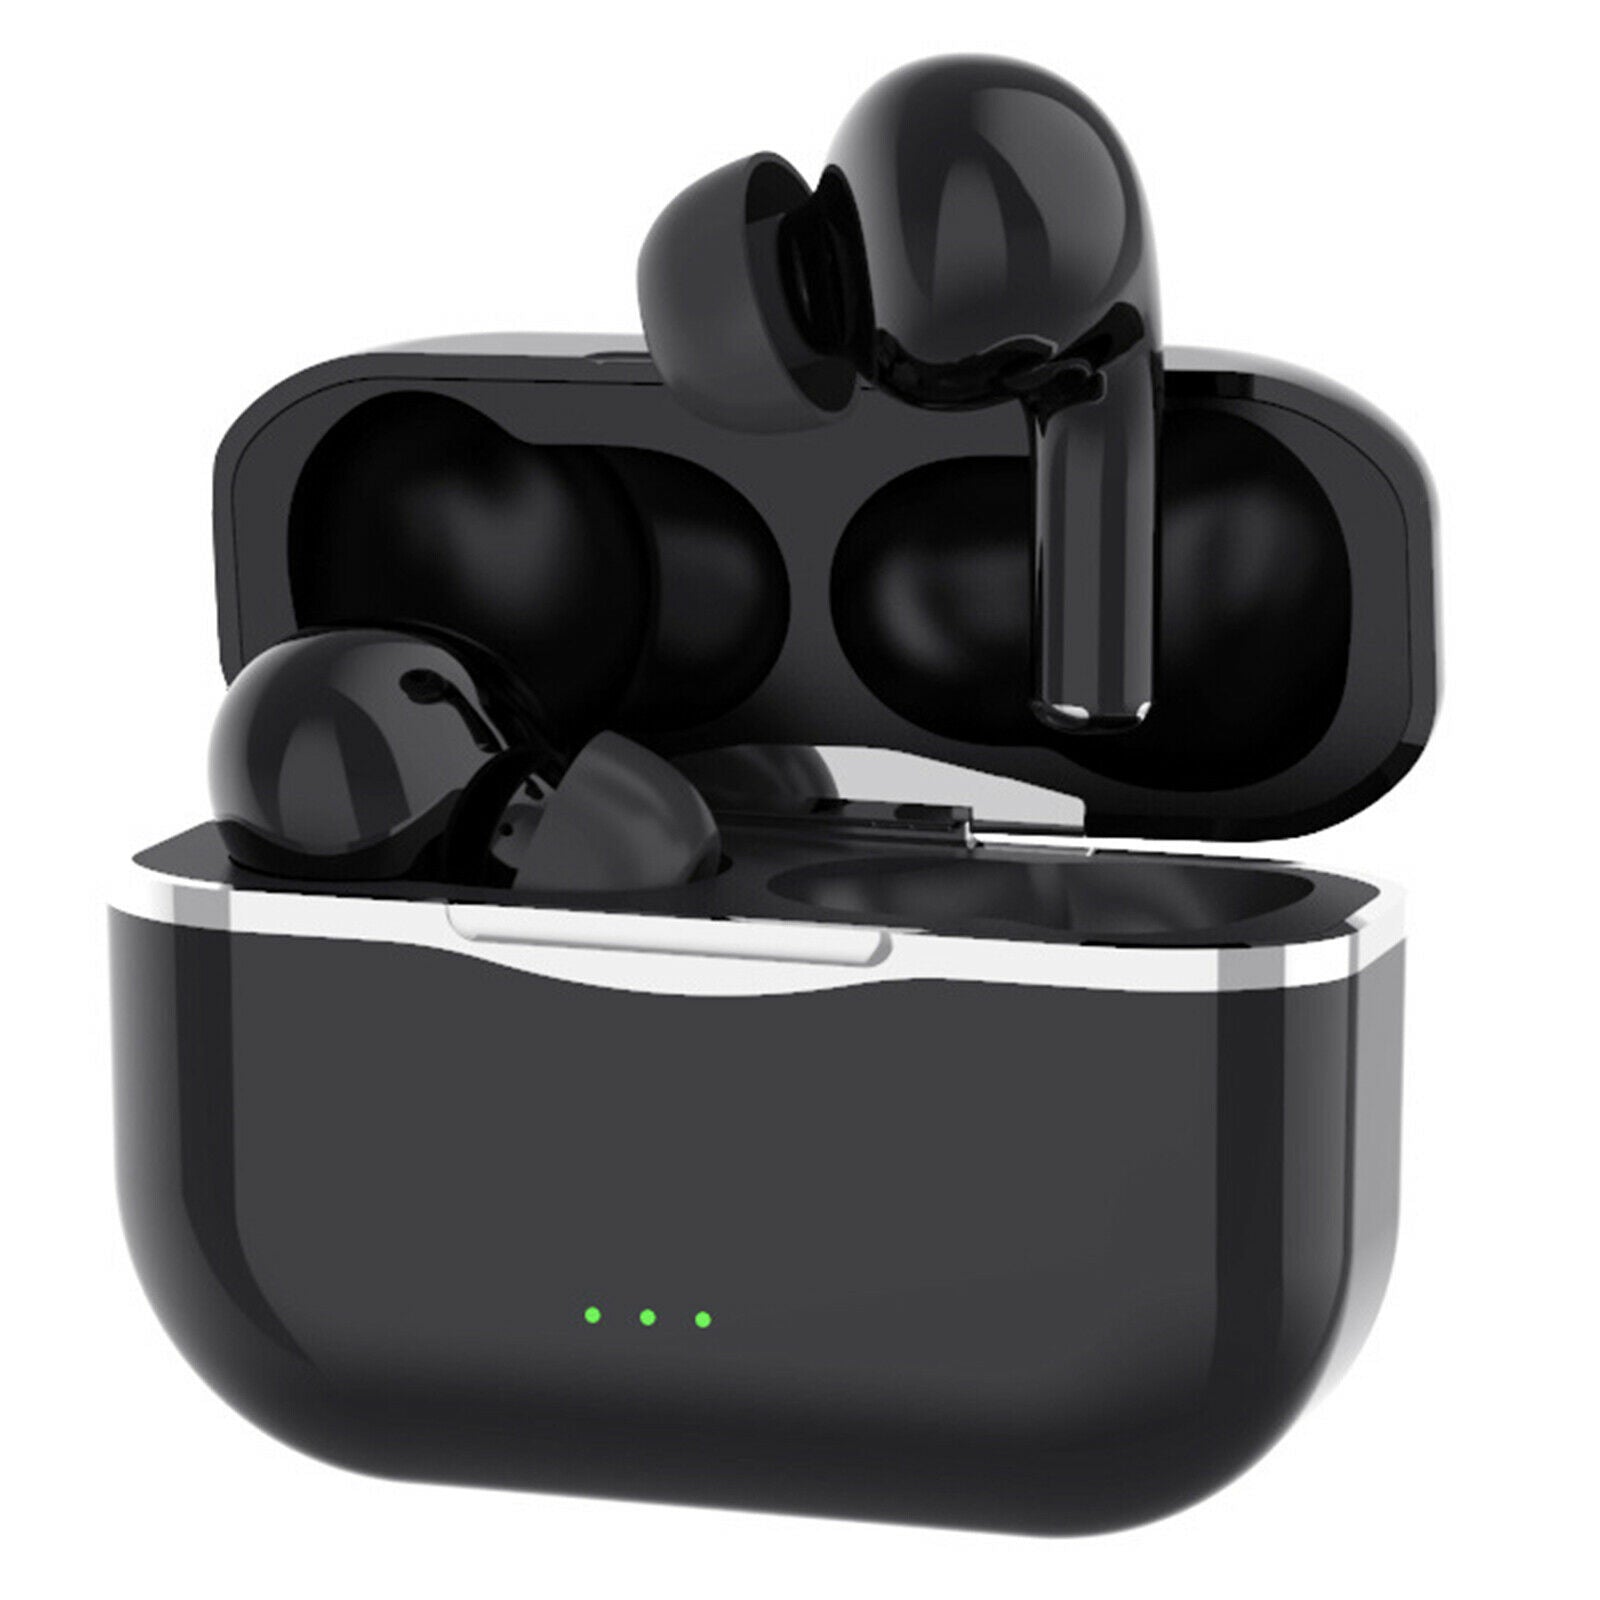 C9 Bluetooth 5.0 True Wireless Earbuds In Ear Built in Mic Noise Canceling